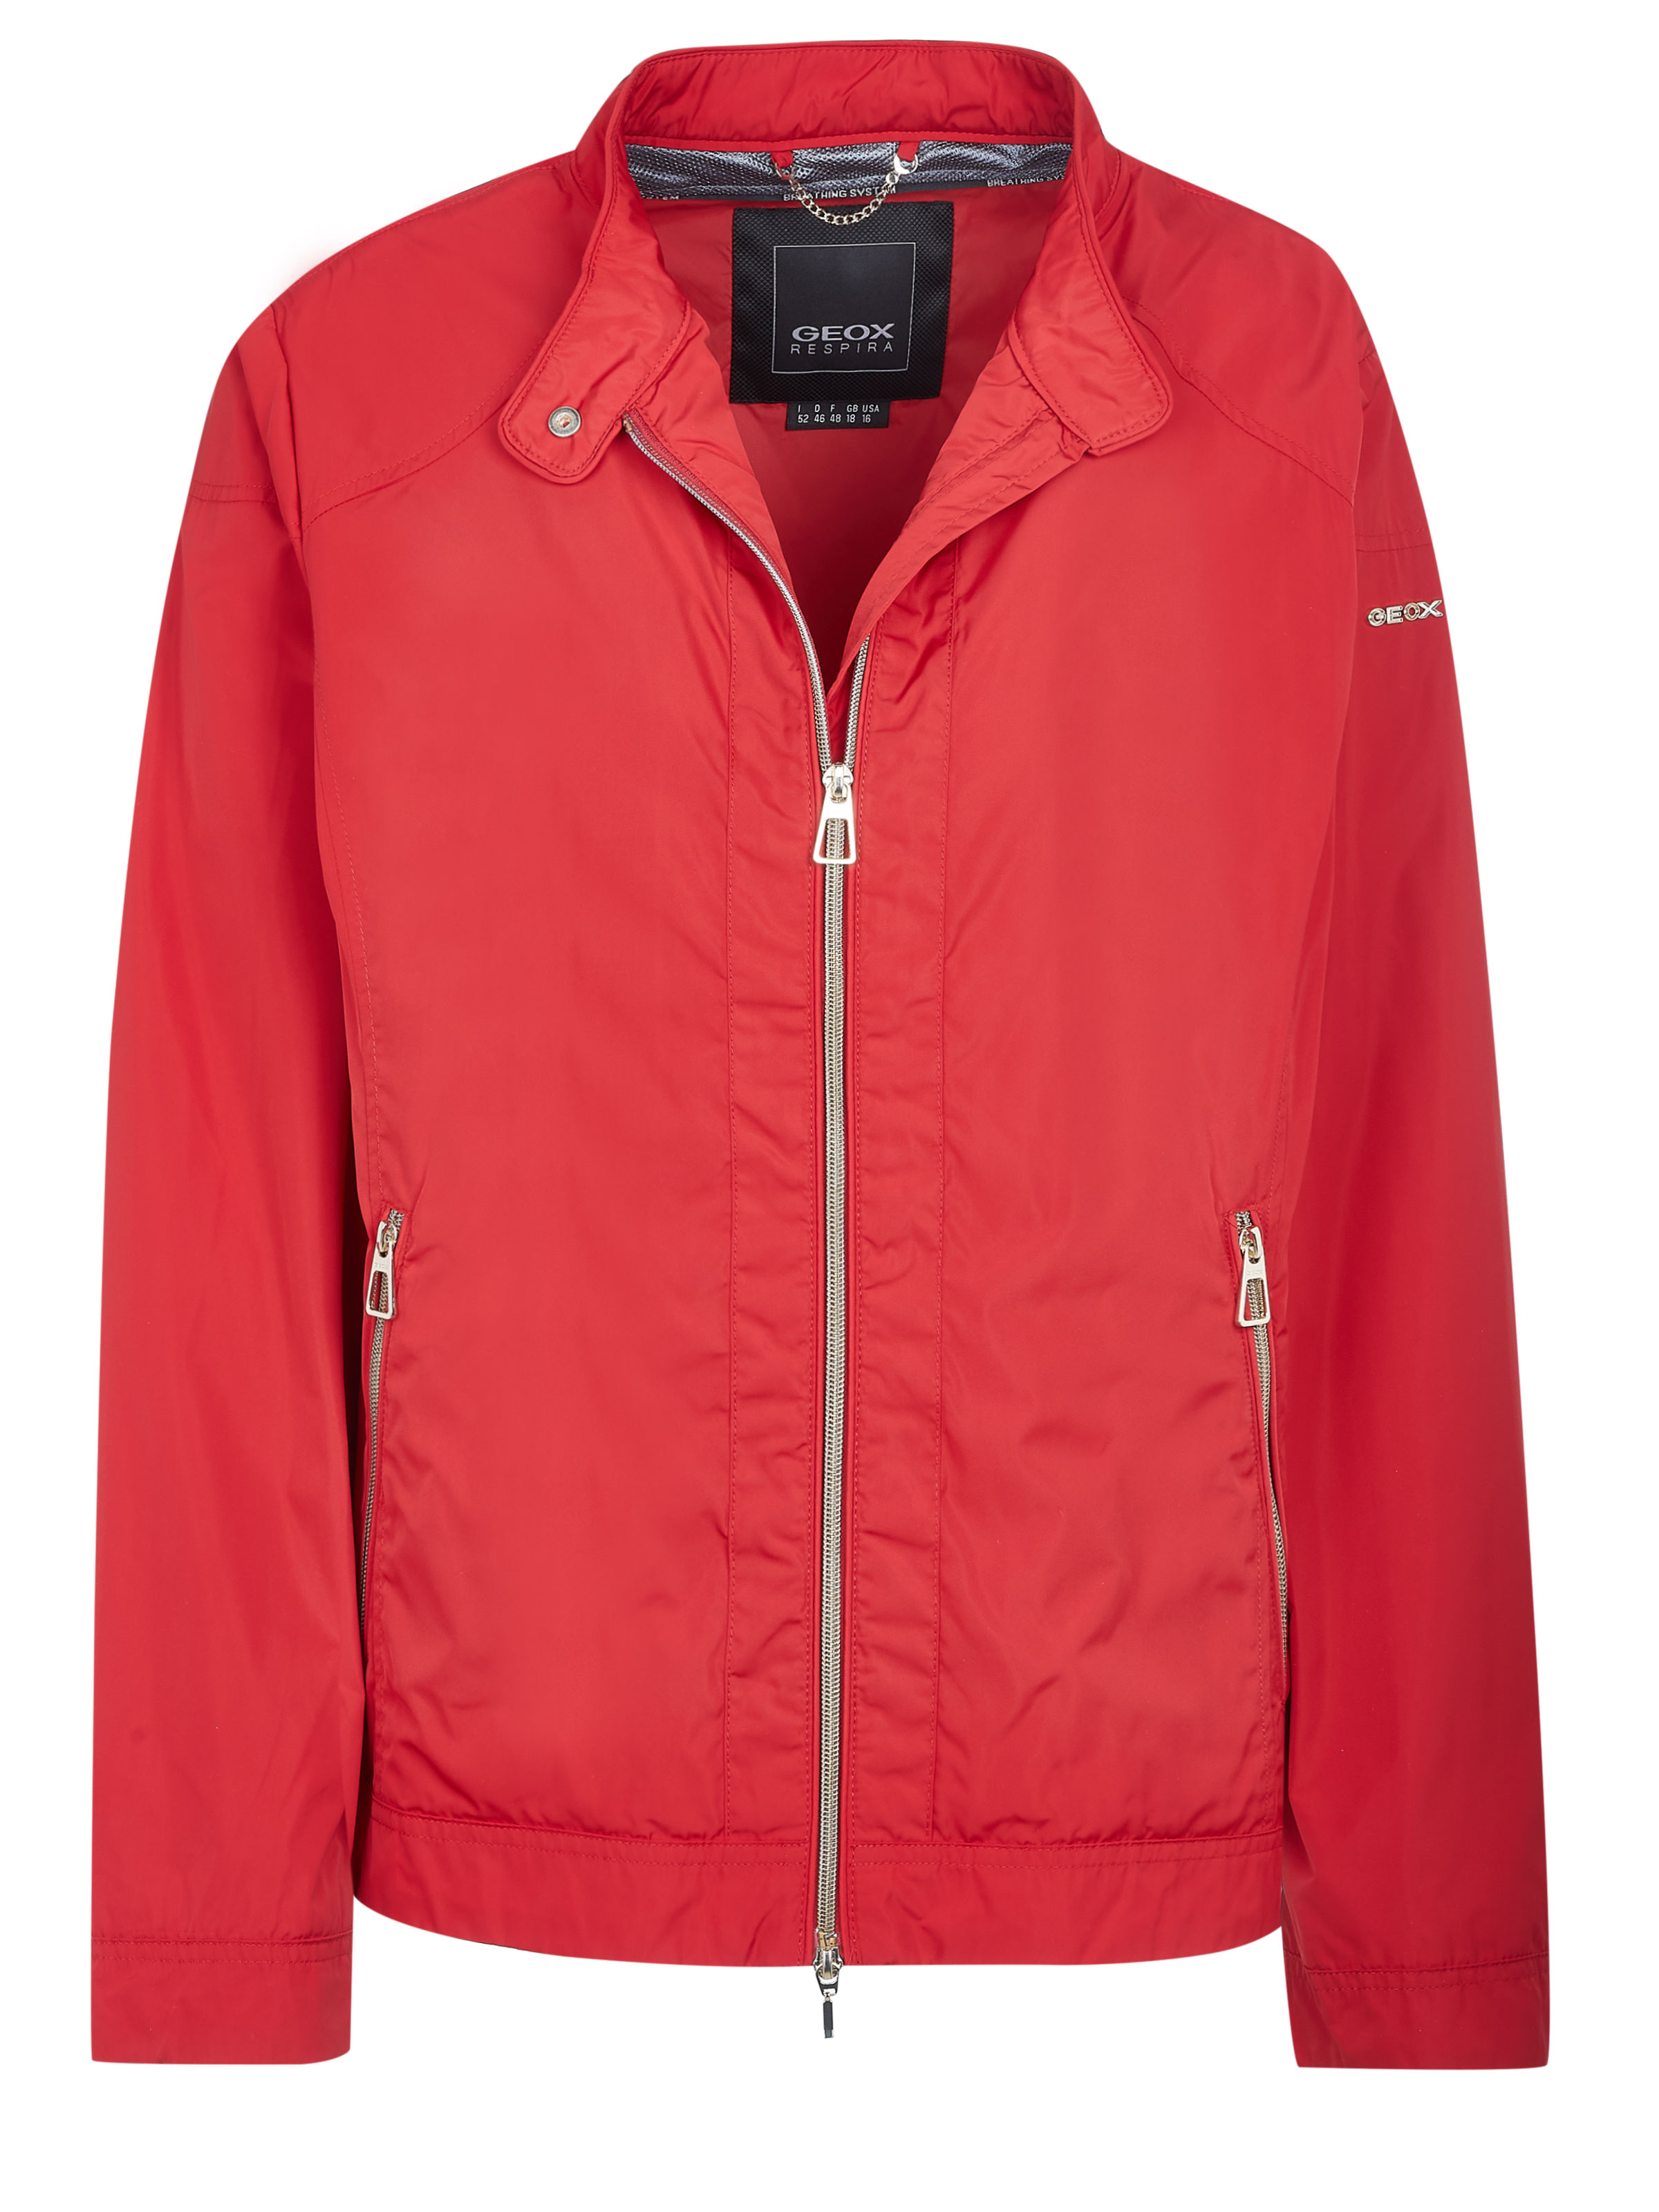 Jacket Red on SALE | Fashionesta